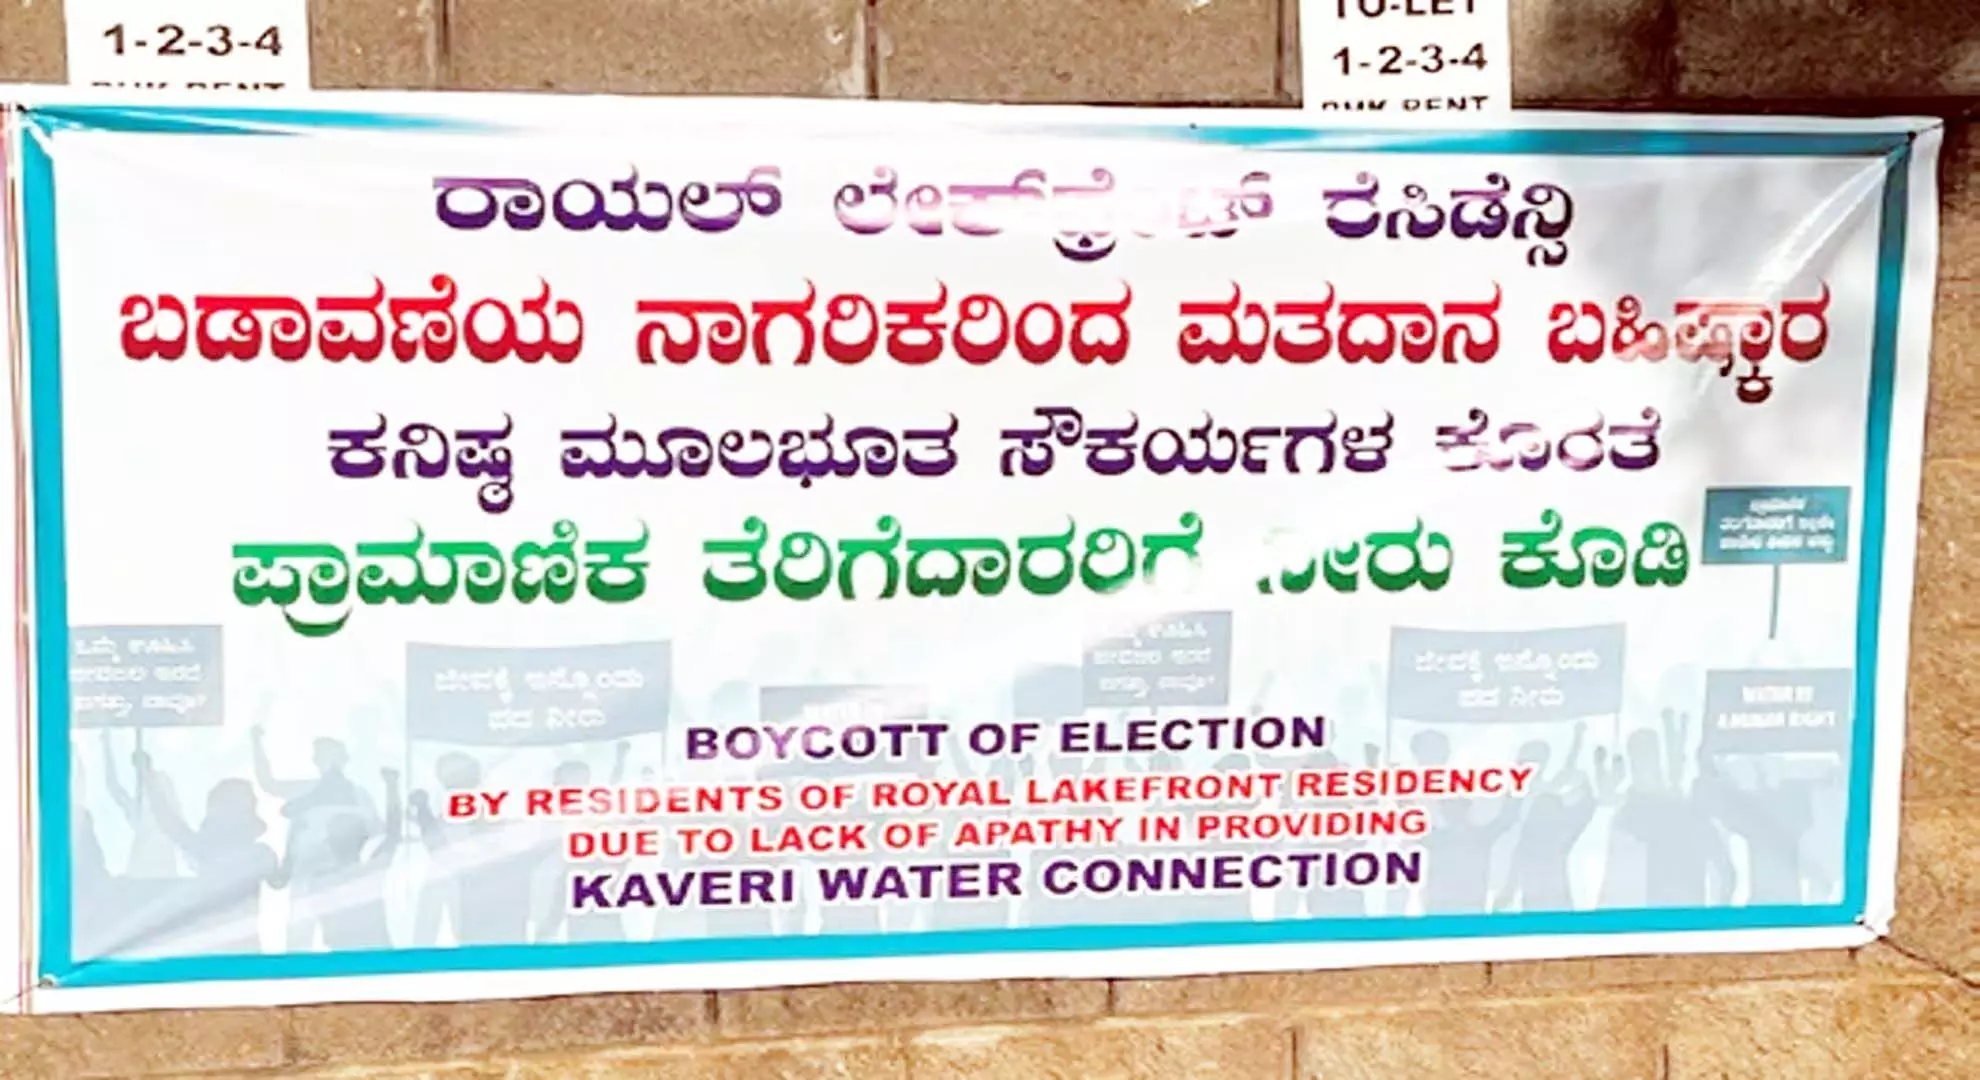 बीडब्ल्यूएसएसबी ने कावेरी जल के लिए 2.3 करोड़ रुपये की मांग की, फ्लैट मालिकों ने चुनाव का बहिष्कार किया